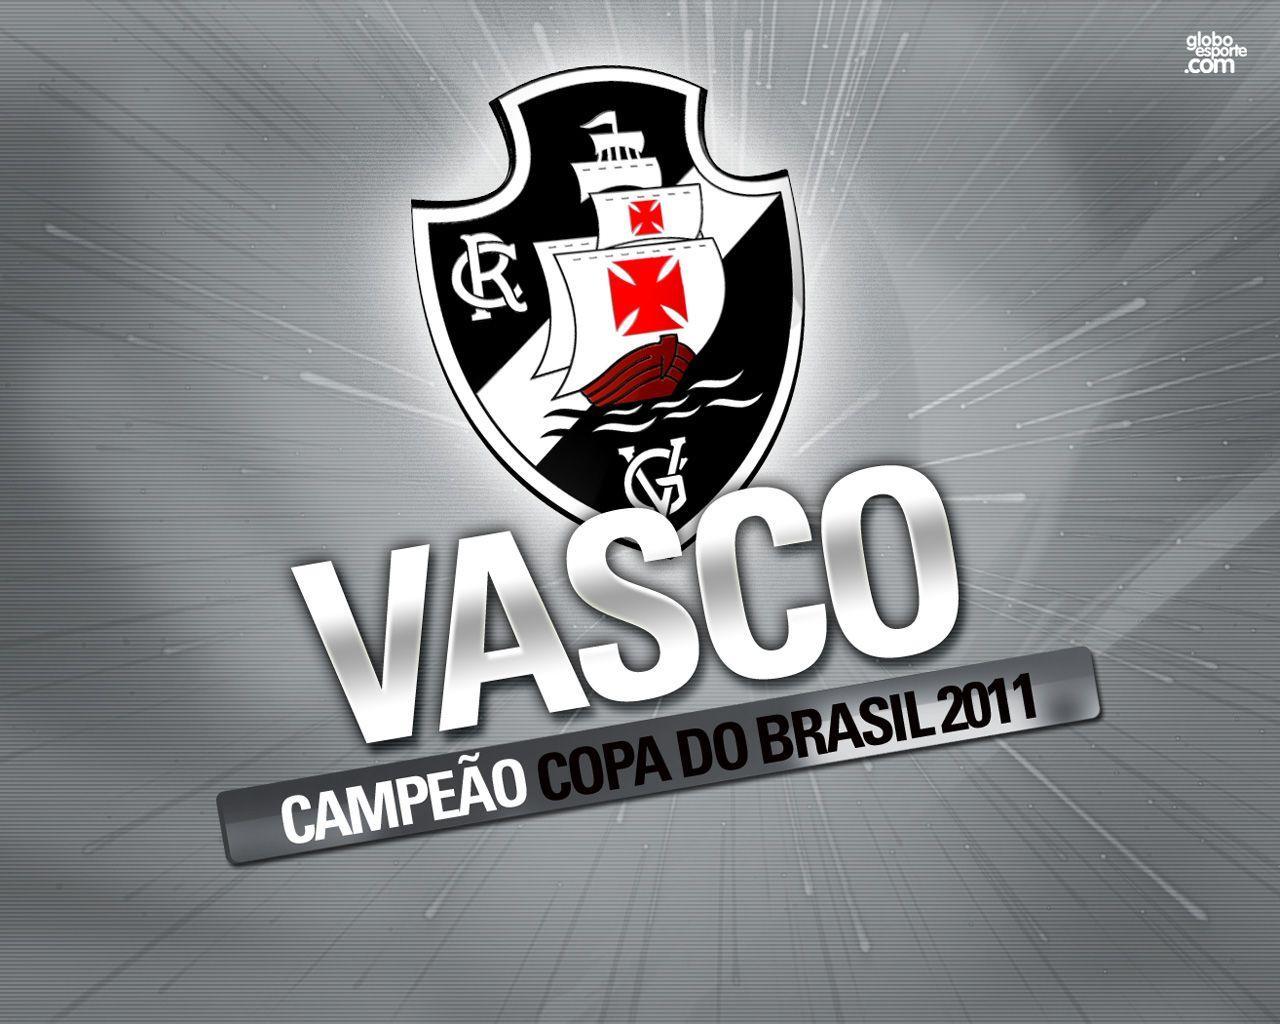 pic new posts: Wallpaper Vasco Da Gama 2011